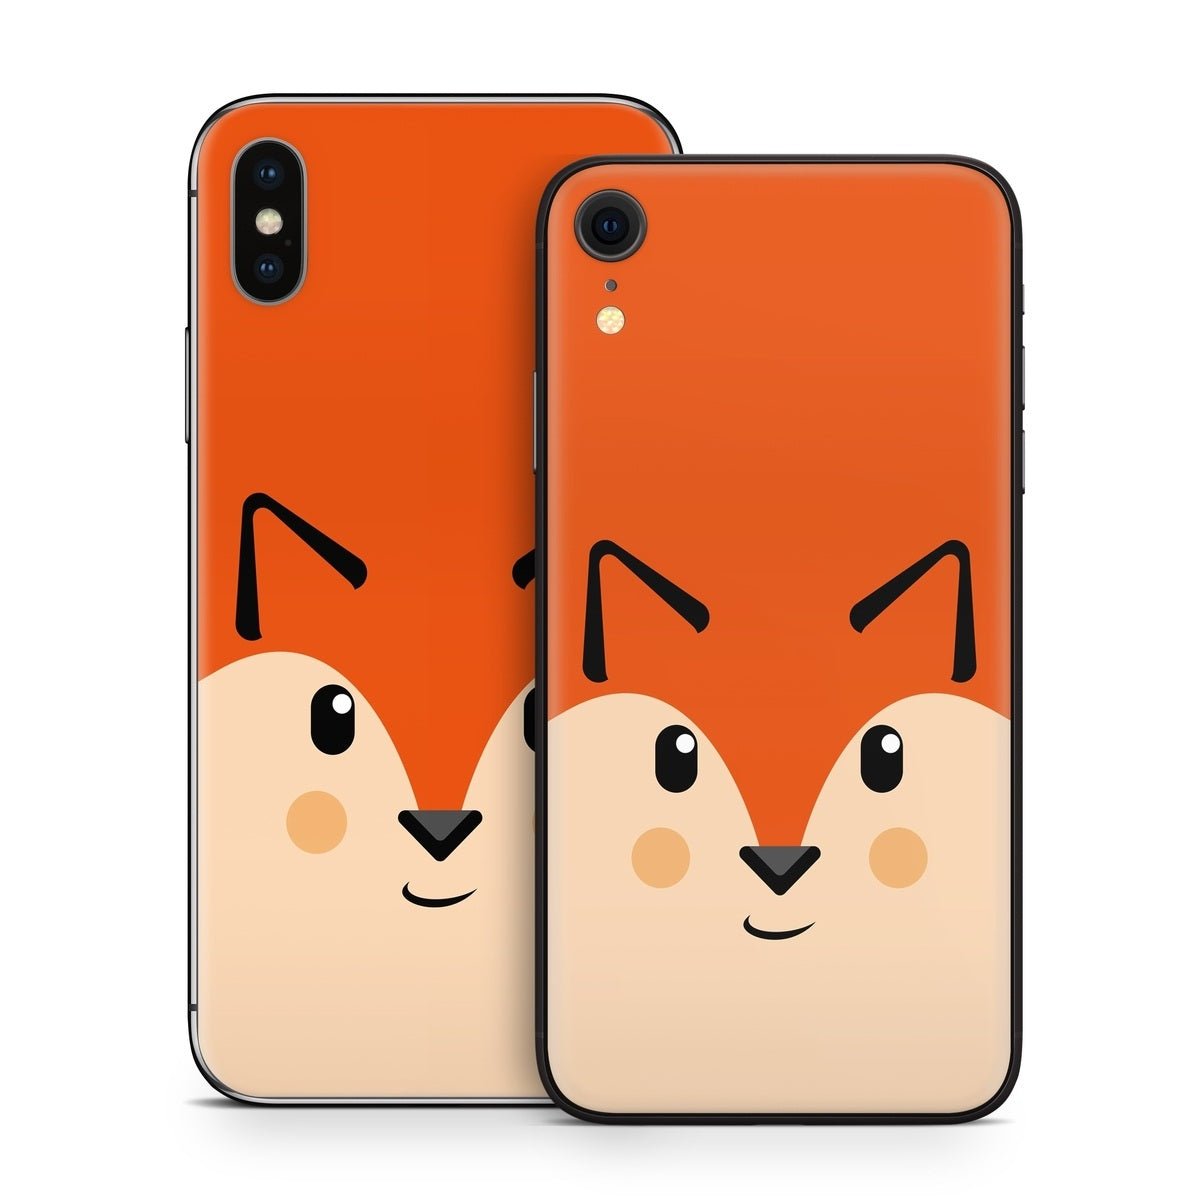 Autumn the Fox - Apple iPhone X Skin - The Zoo - DecalGirl